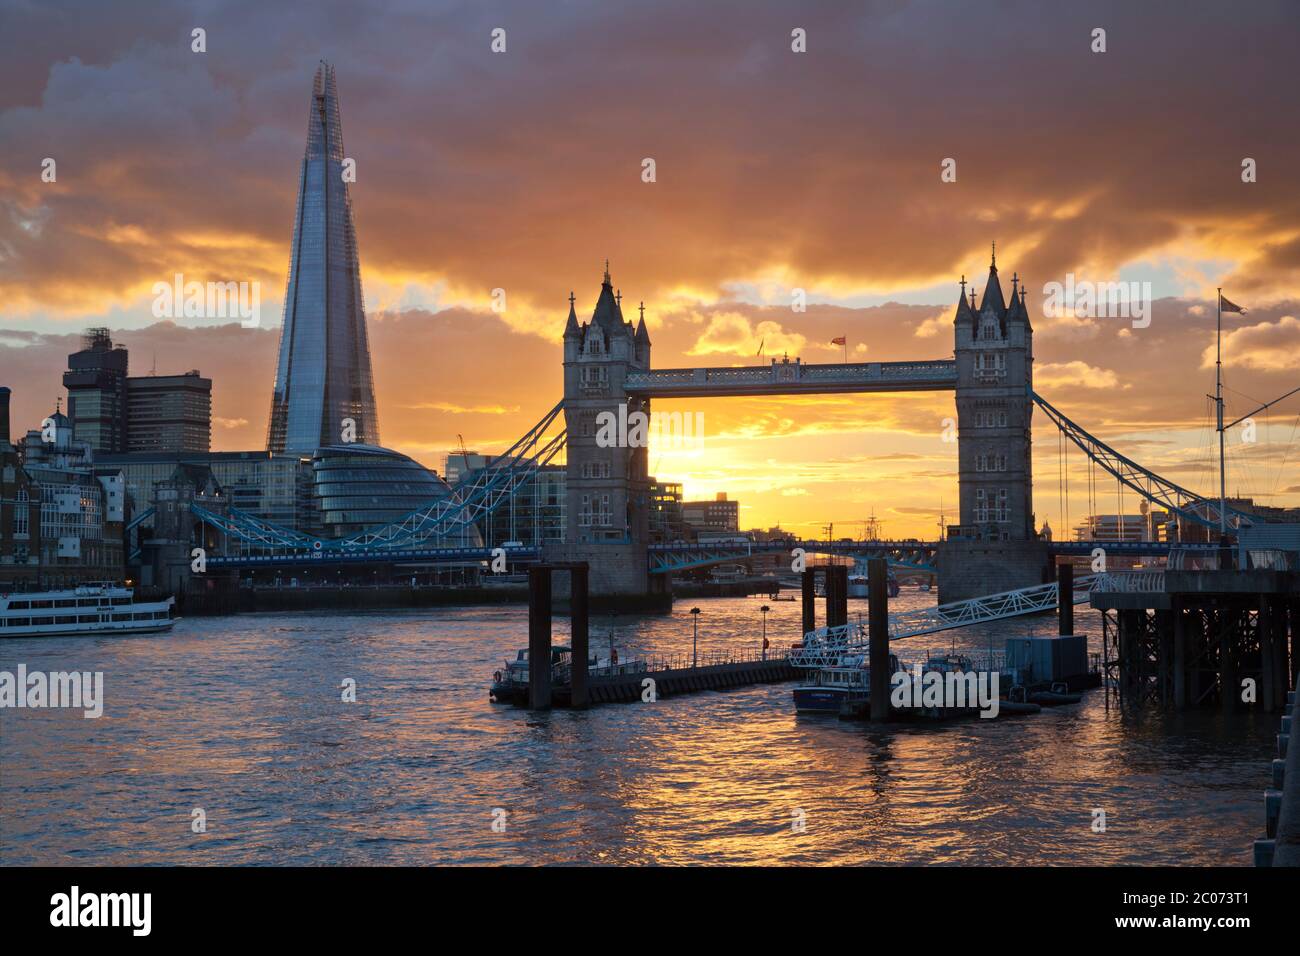 Le Shard et Tower Bridge sur la Tamise au coucher du soleil, Londres, Angleterre, Royaume-Uni Banque D'Images